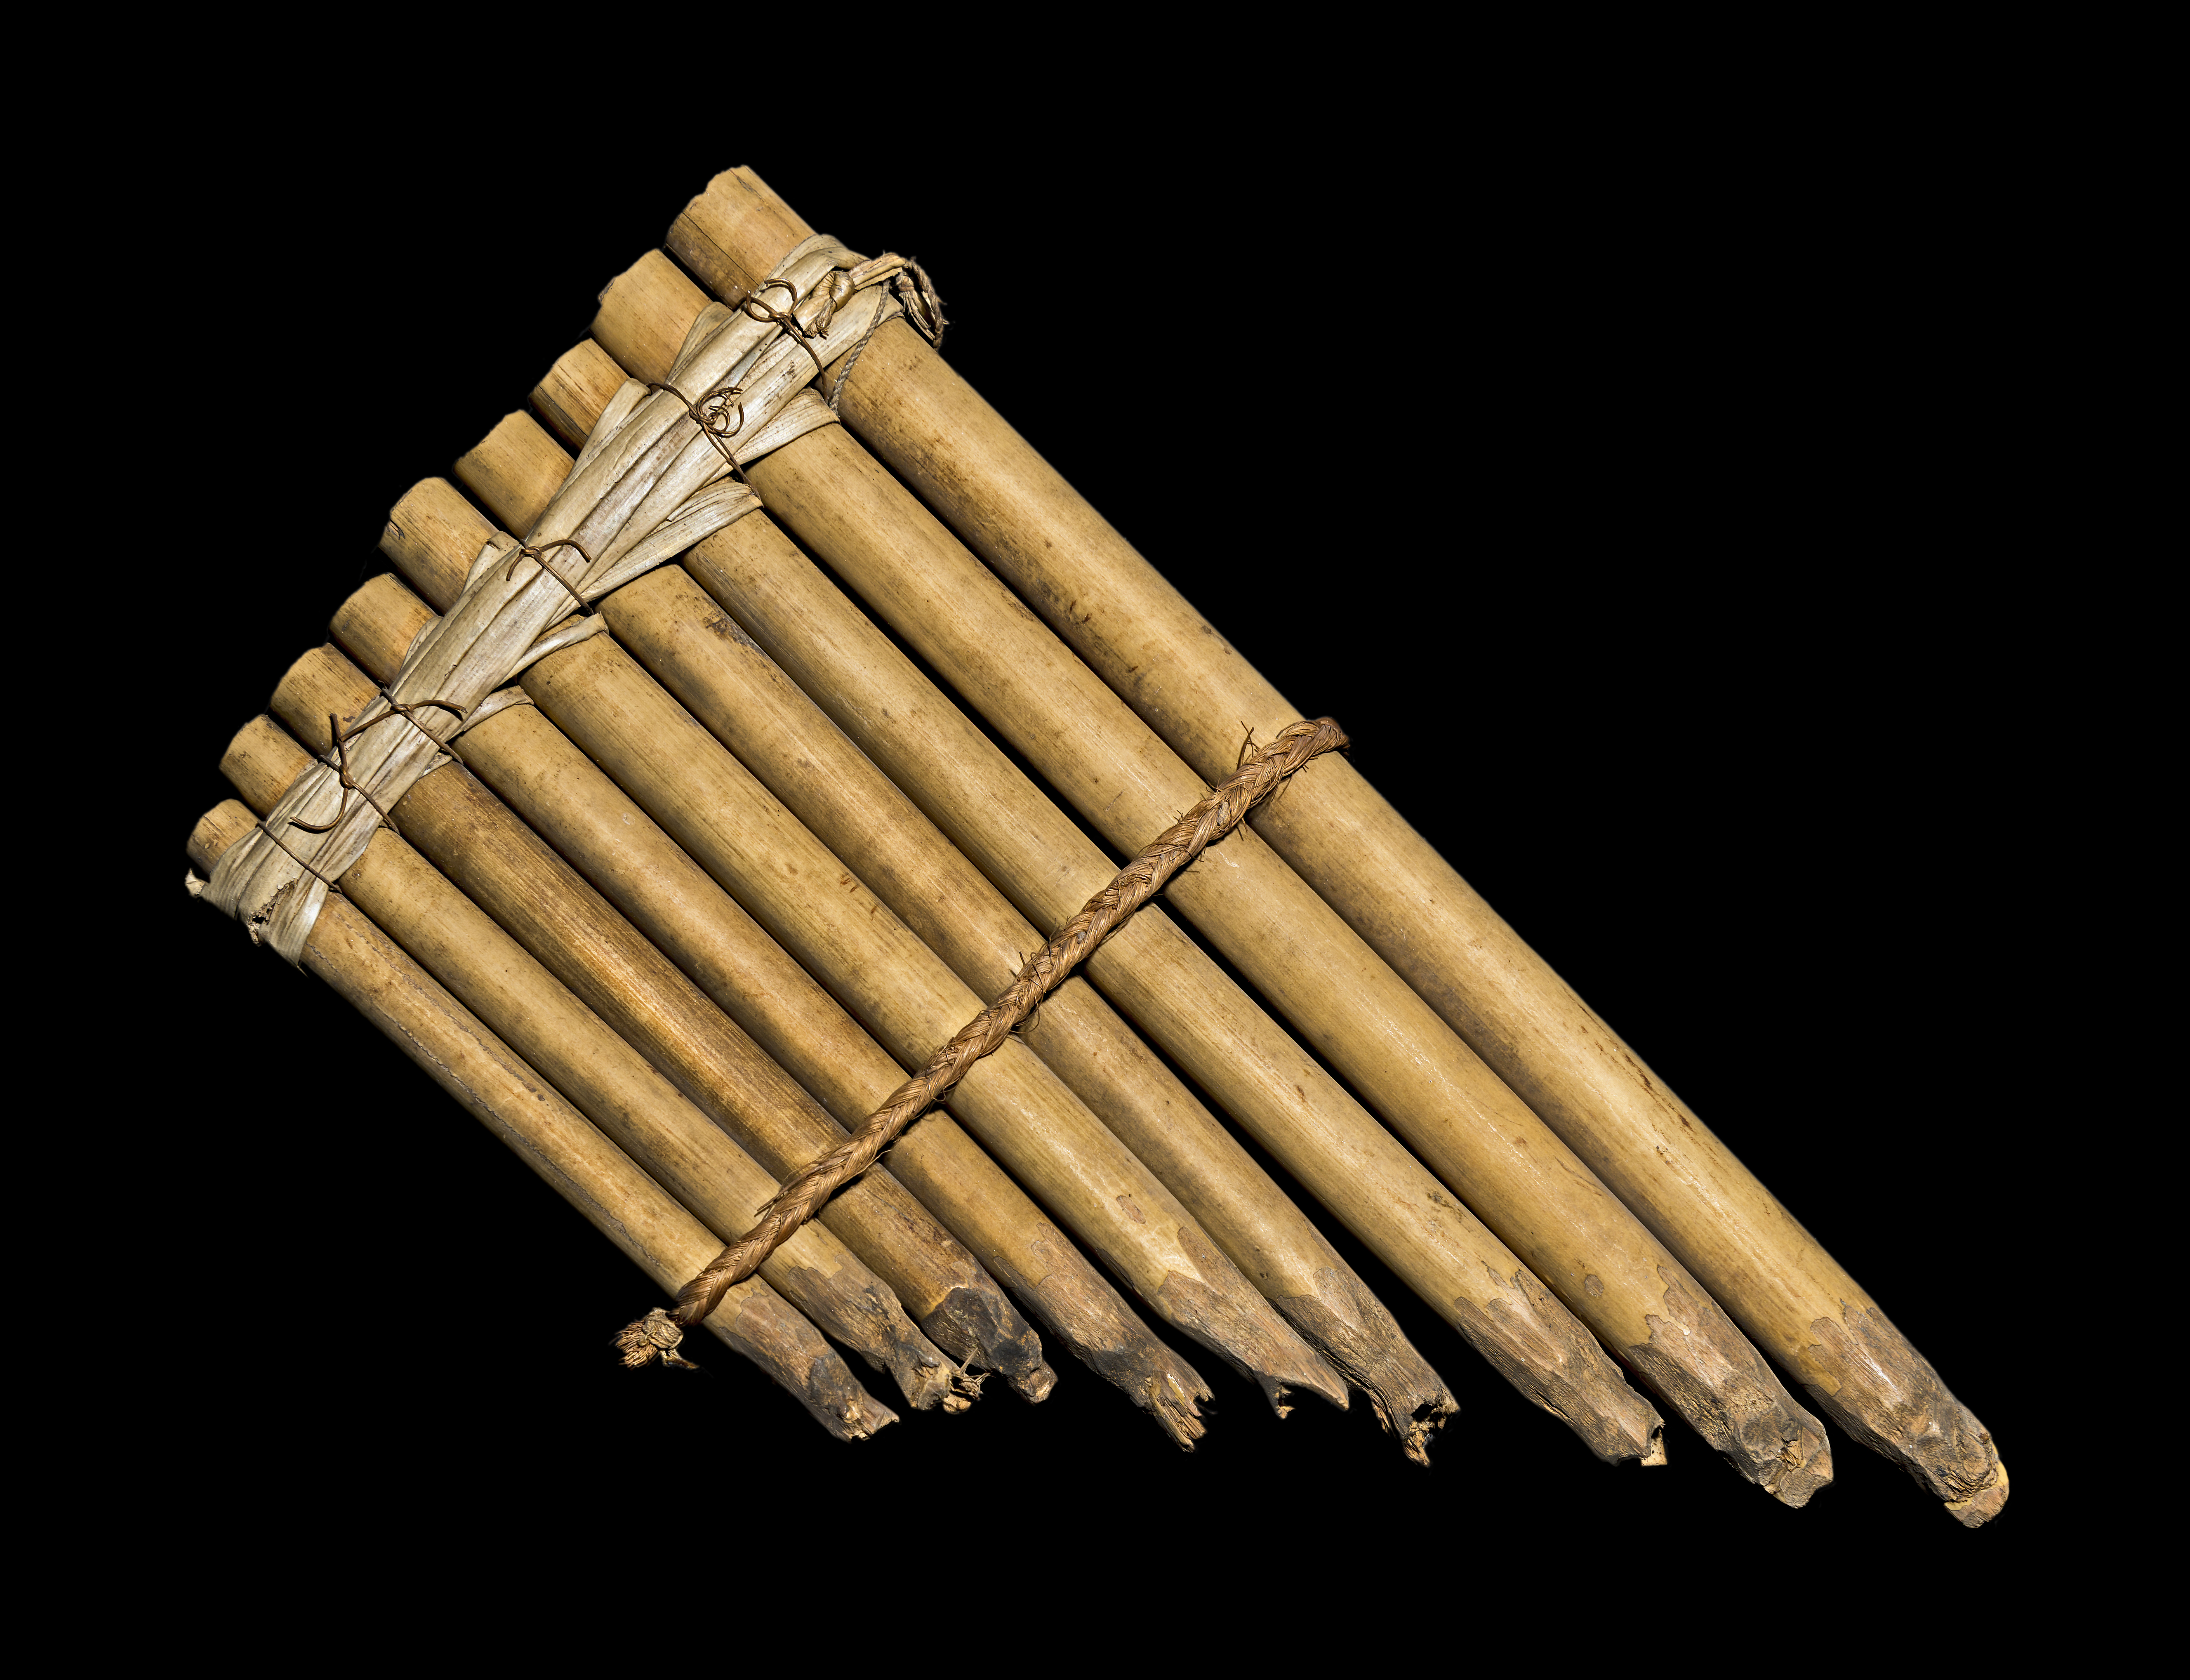 La flûte de bambou : un élément de la culture